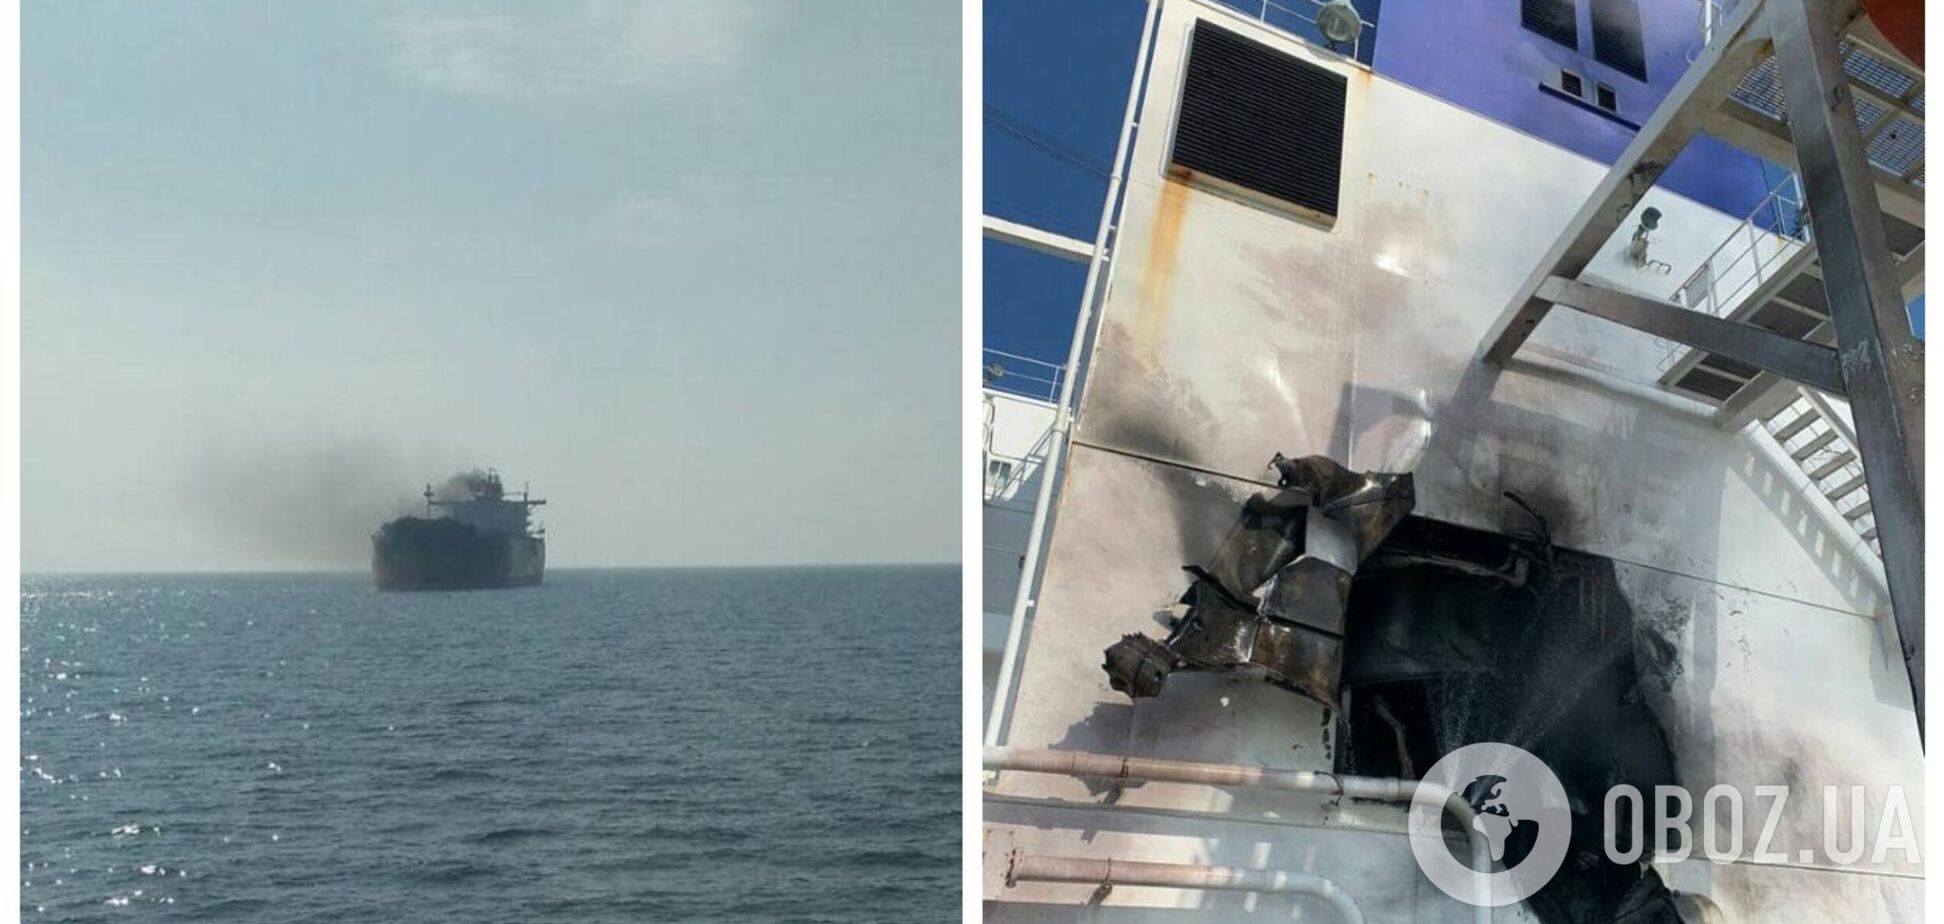 Російські окупанти обстріляли молдовський корабель у Чорному морі – Головнокомандувач ЗСУ